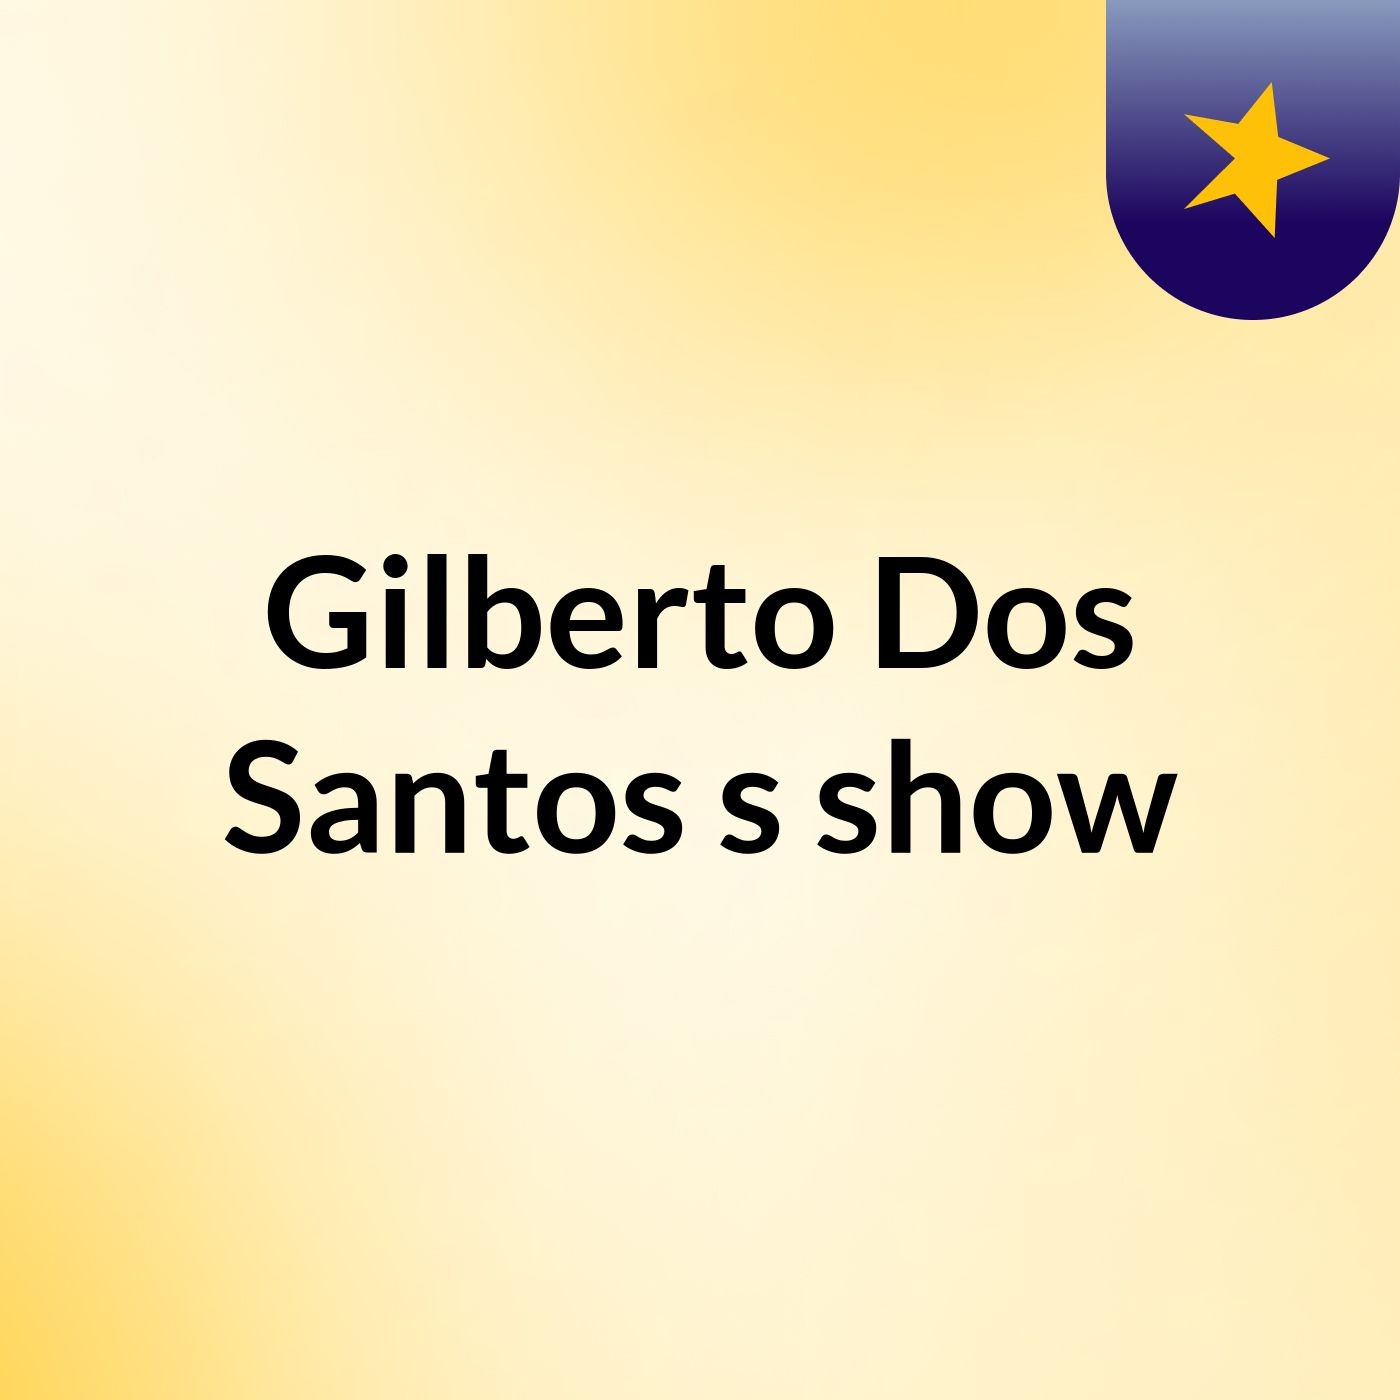 Gilberto Dos Santos's show